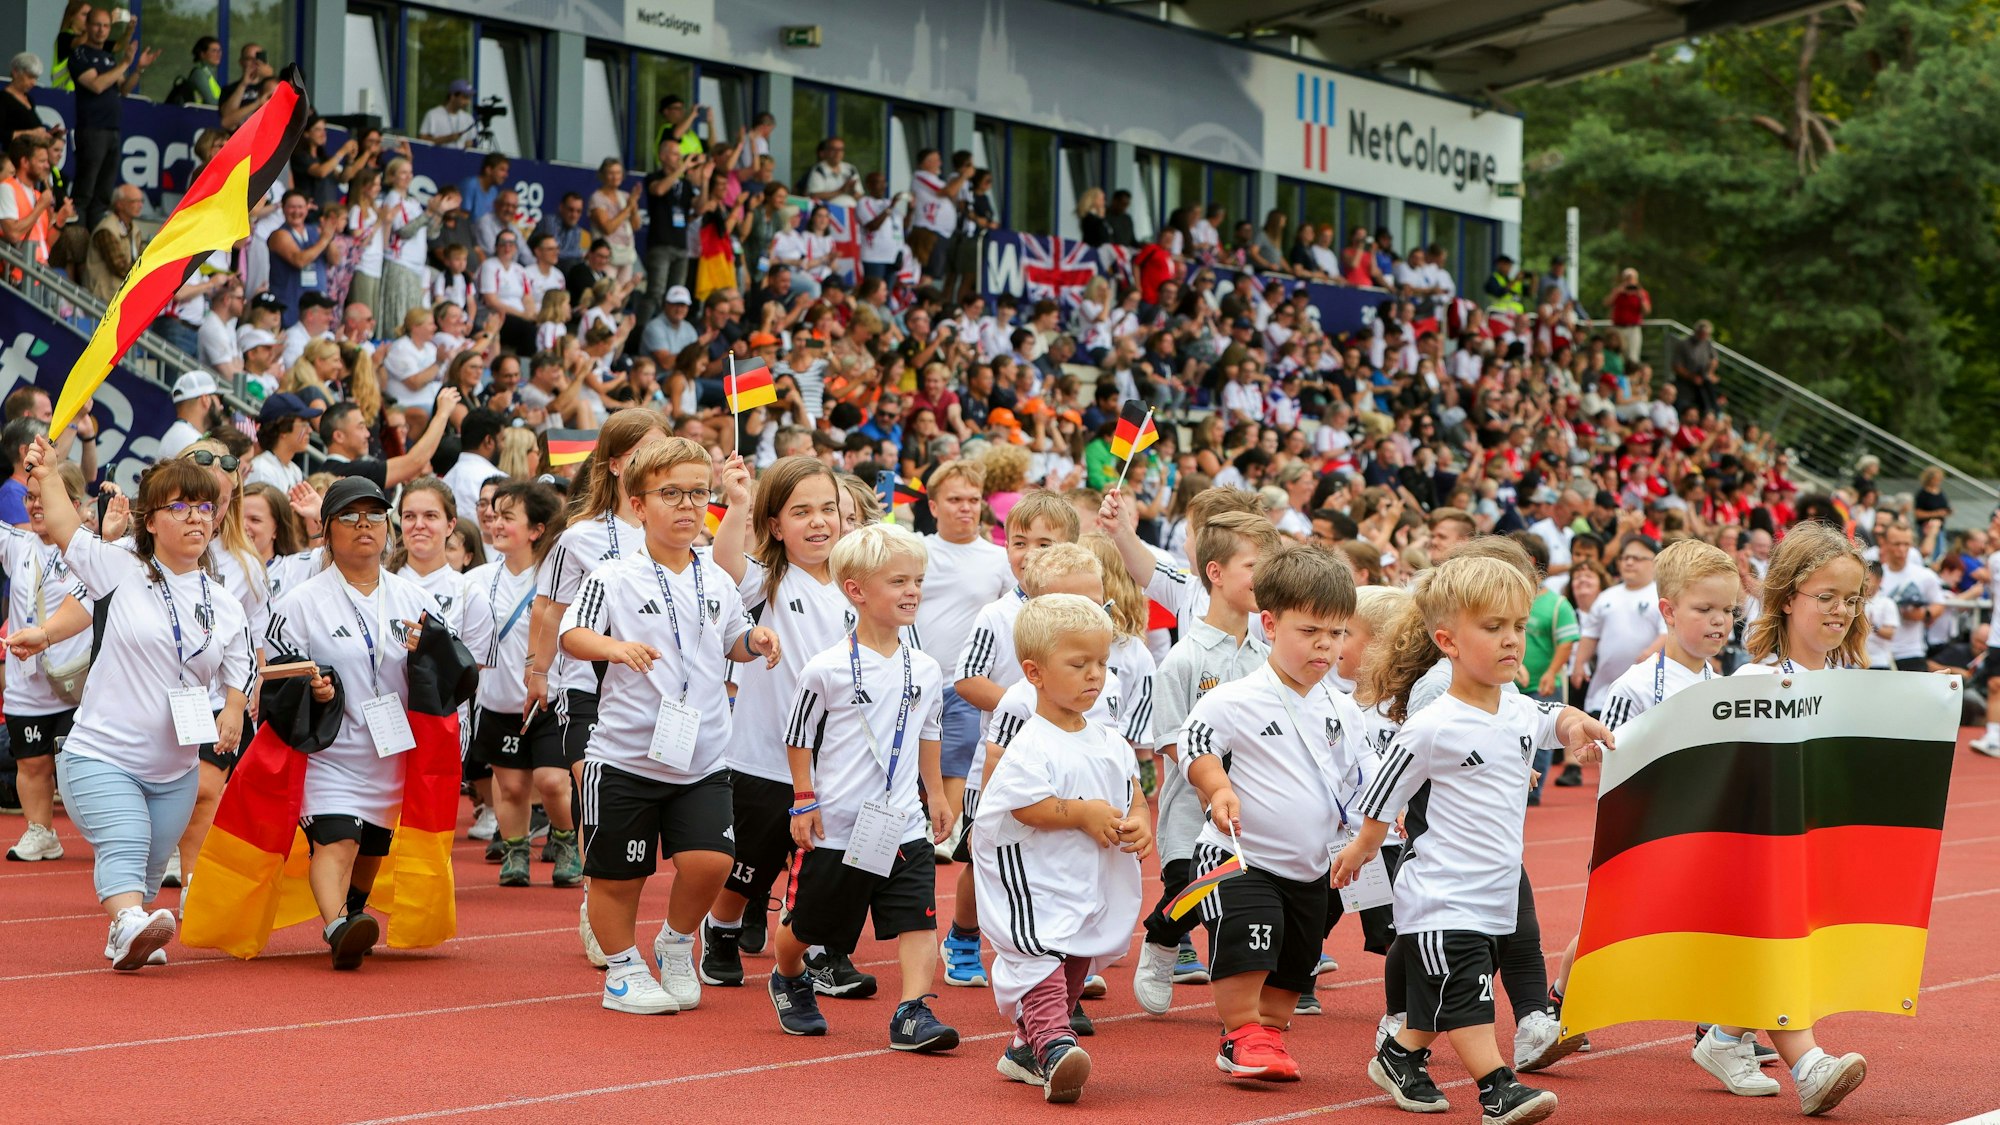 Die deutschen Athletinnen und Athleten der World Dwarf Games laufen bei der Eröffnungsfeier der World Dwarf Games ins NetCologne Stadion der Deutschen Sporthochschule Köln ein.